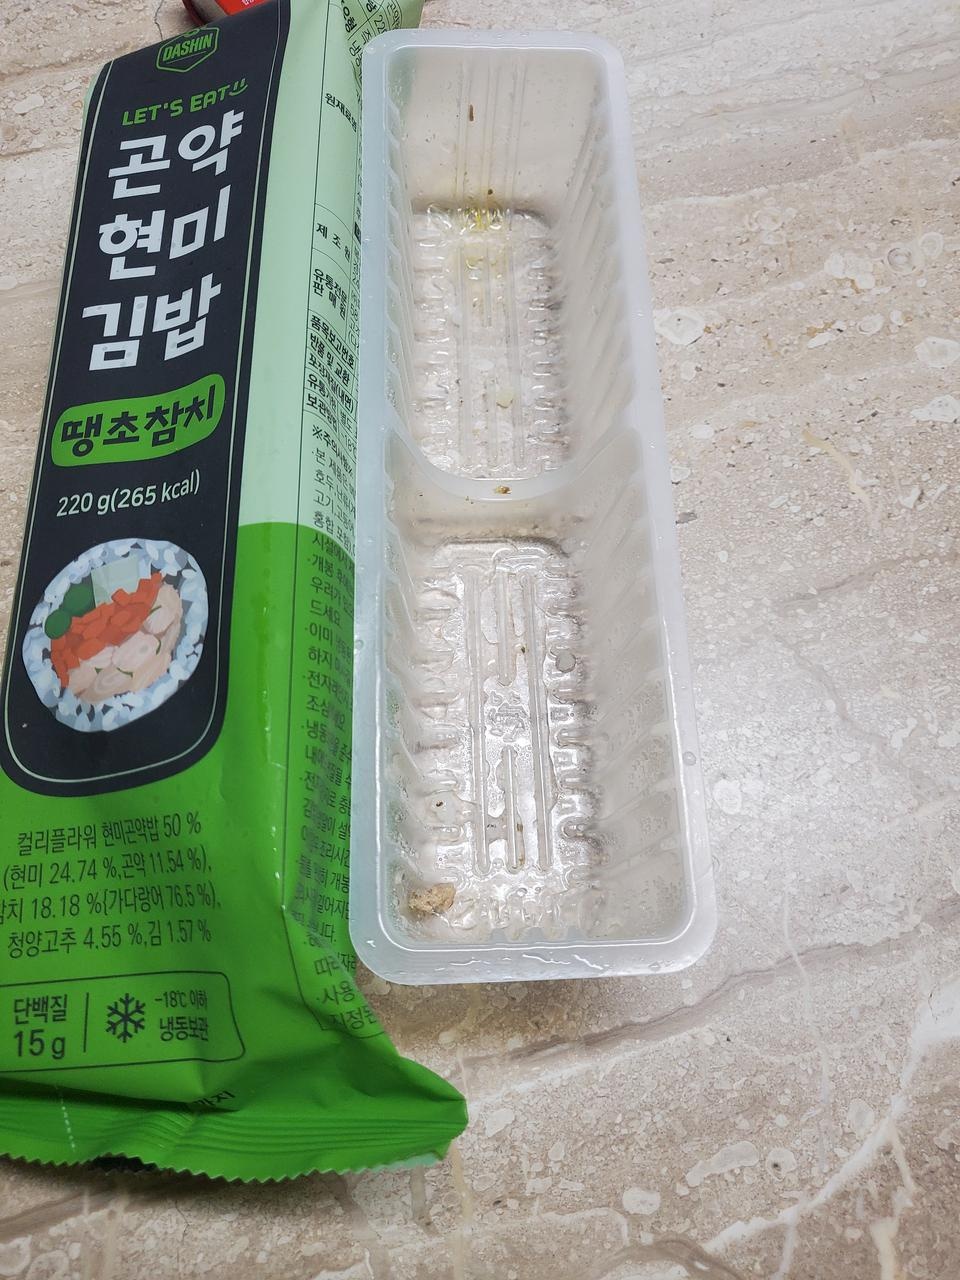 맛있어요 다이어트 식품중에 김밥이 짱이네요
많이안맵고 딱좋아요